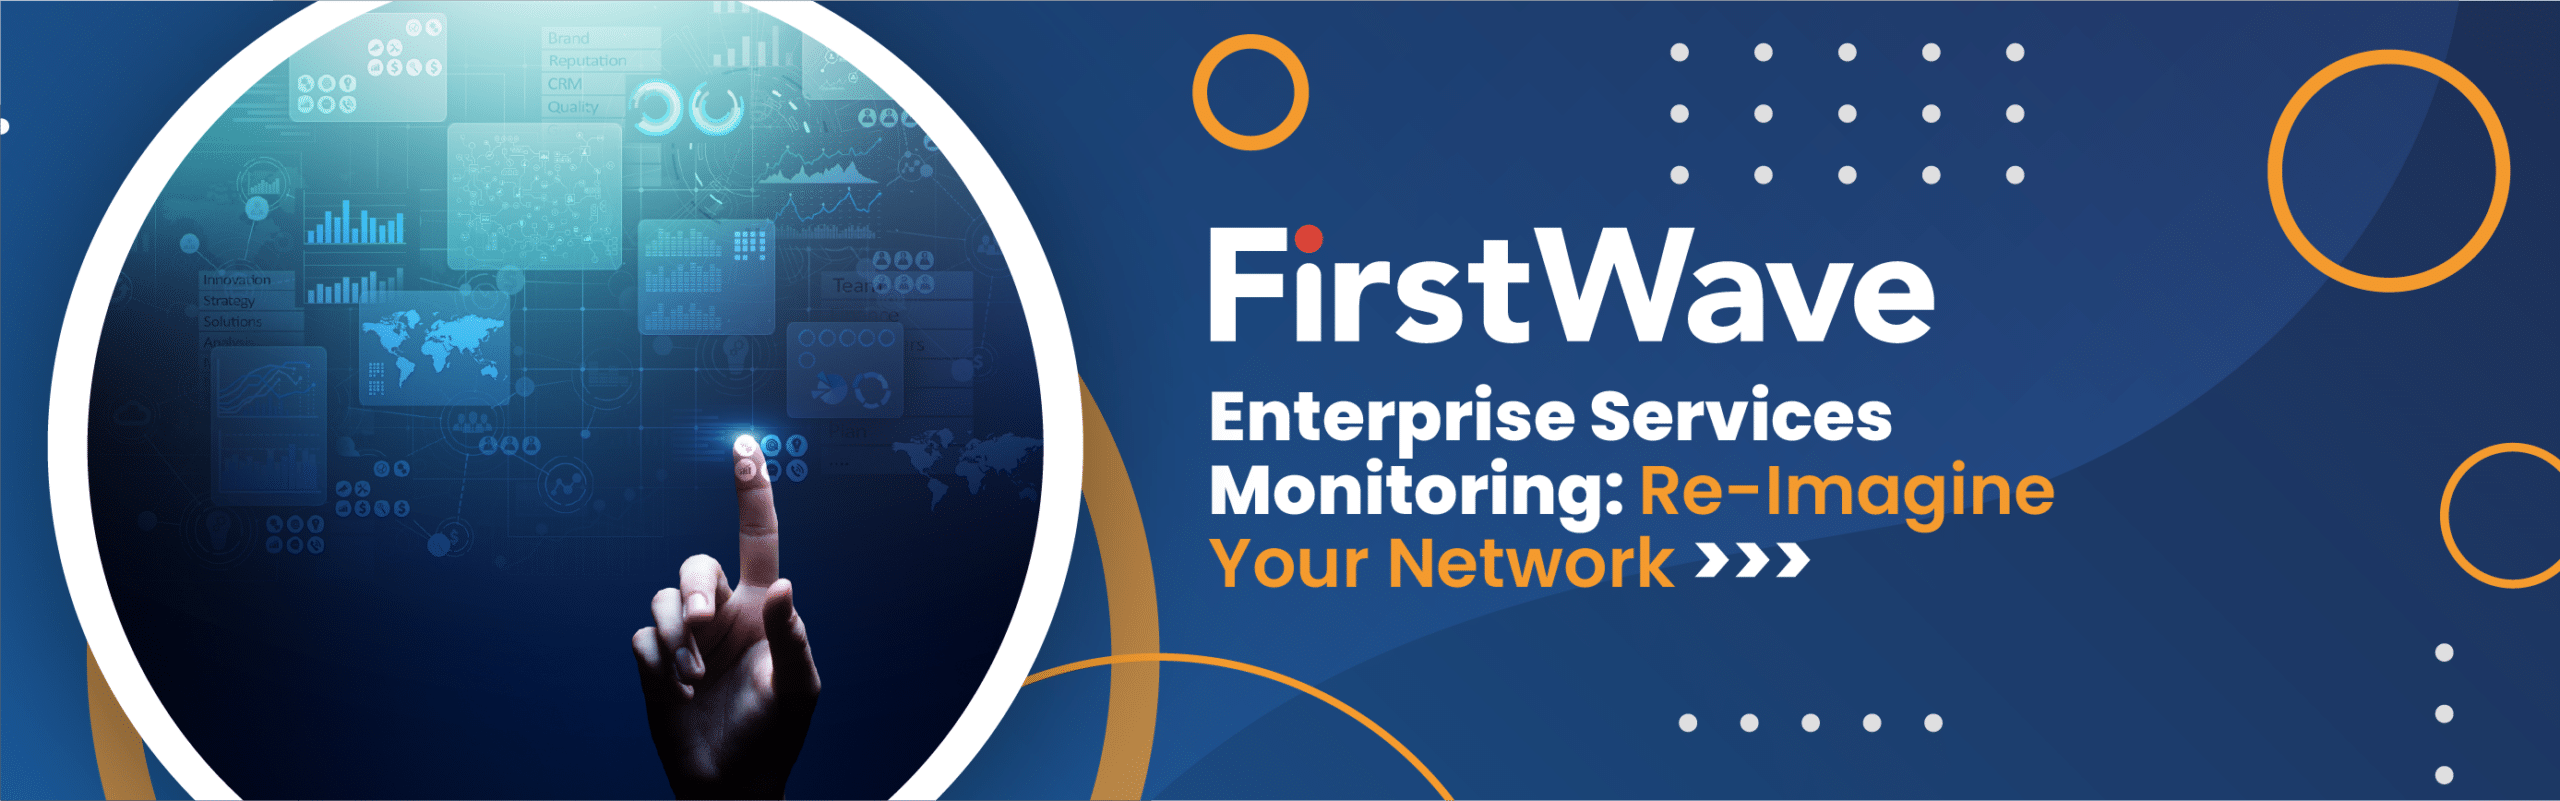 FirstWave presenta una importante extensión de la monitorización de red "Enterprise Services"